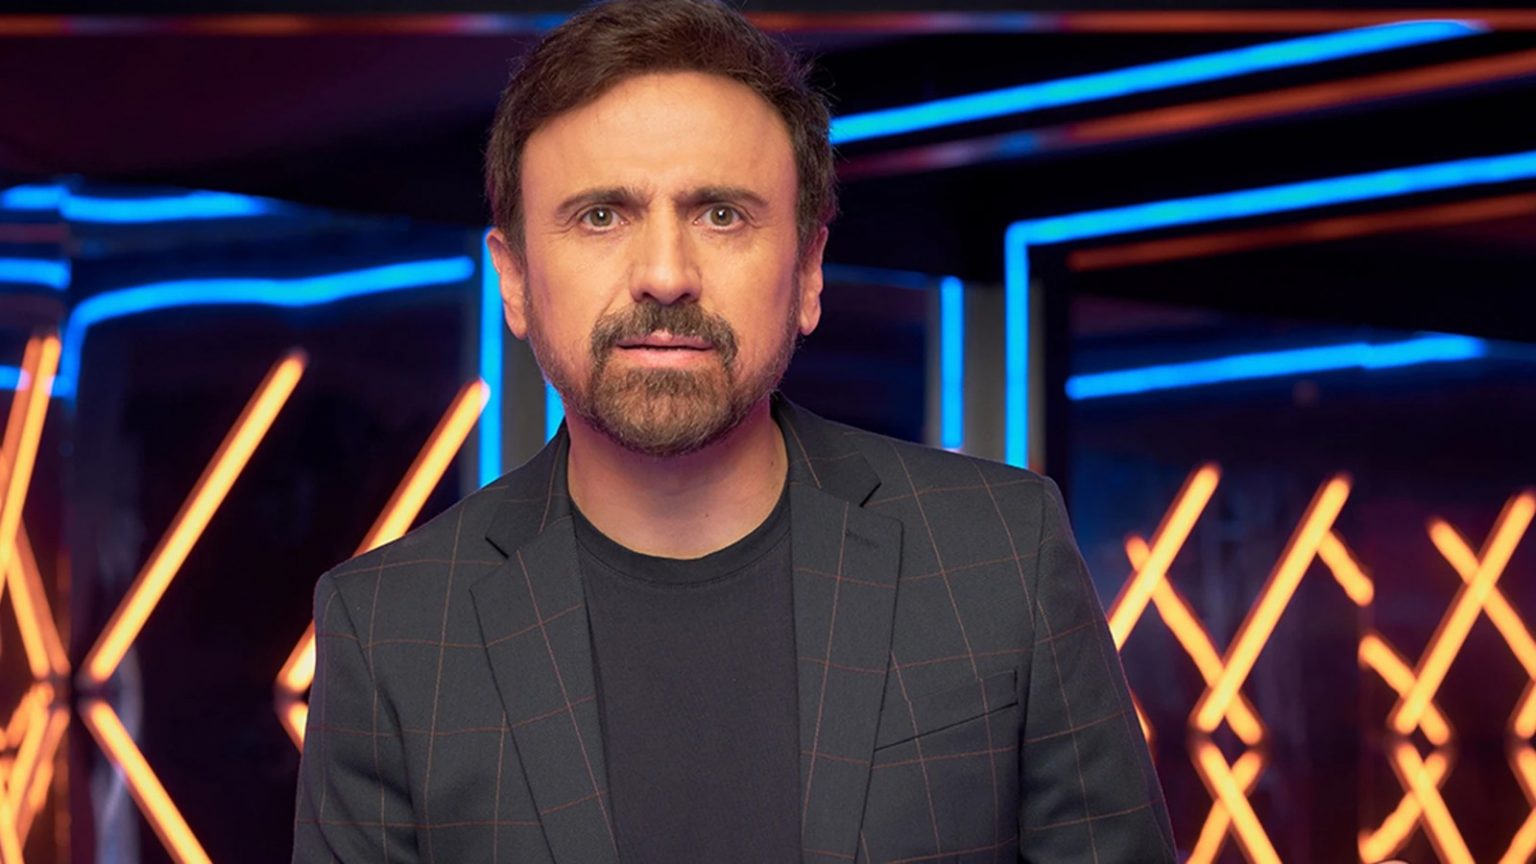 Audiencias: 'José Mota Live Show' (10,7%) lidera en La 1 ante las 'Vacaciones' de Luján Argüelles (9,4%)